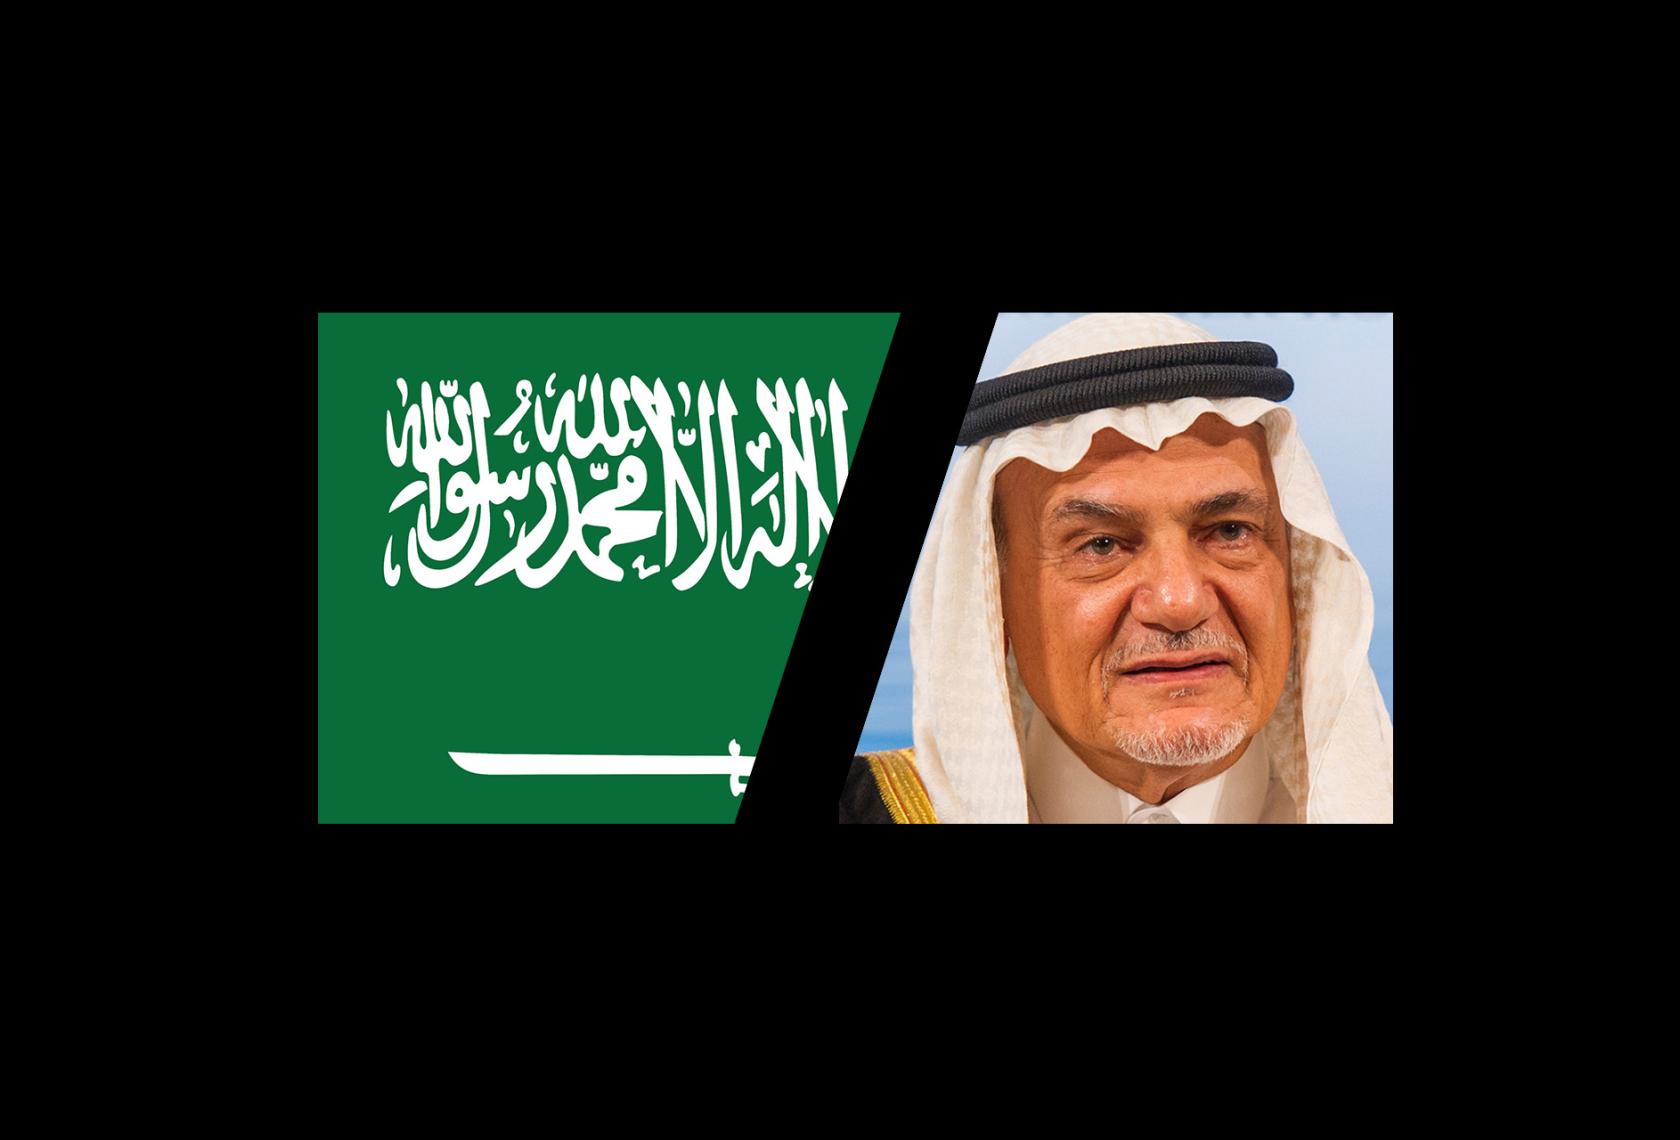 HRH Prince Turki Al-Faisal event